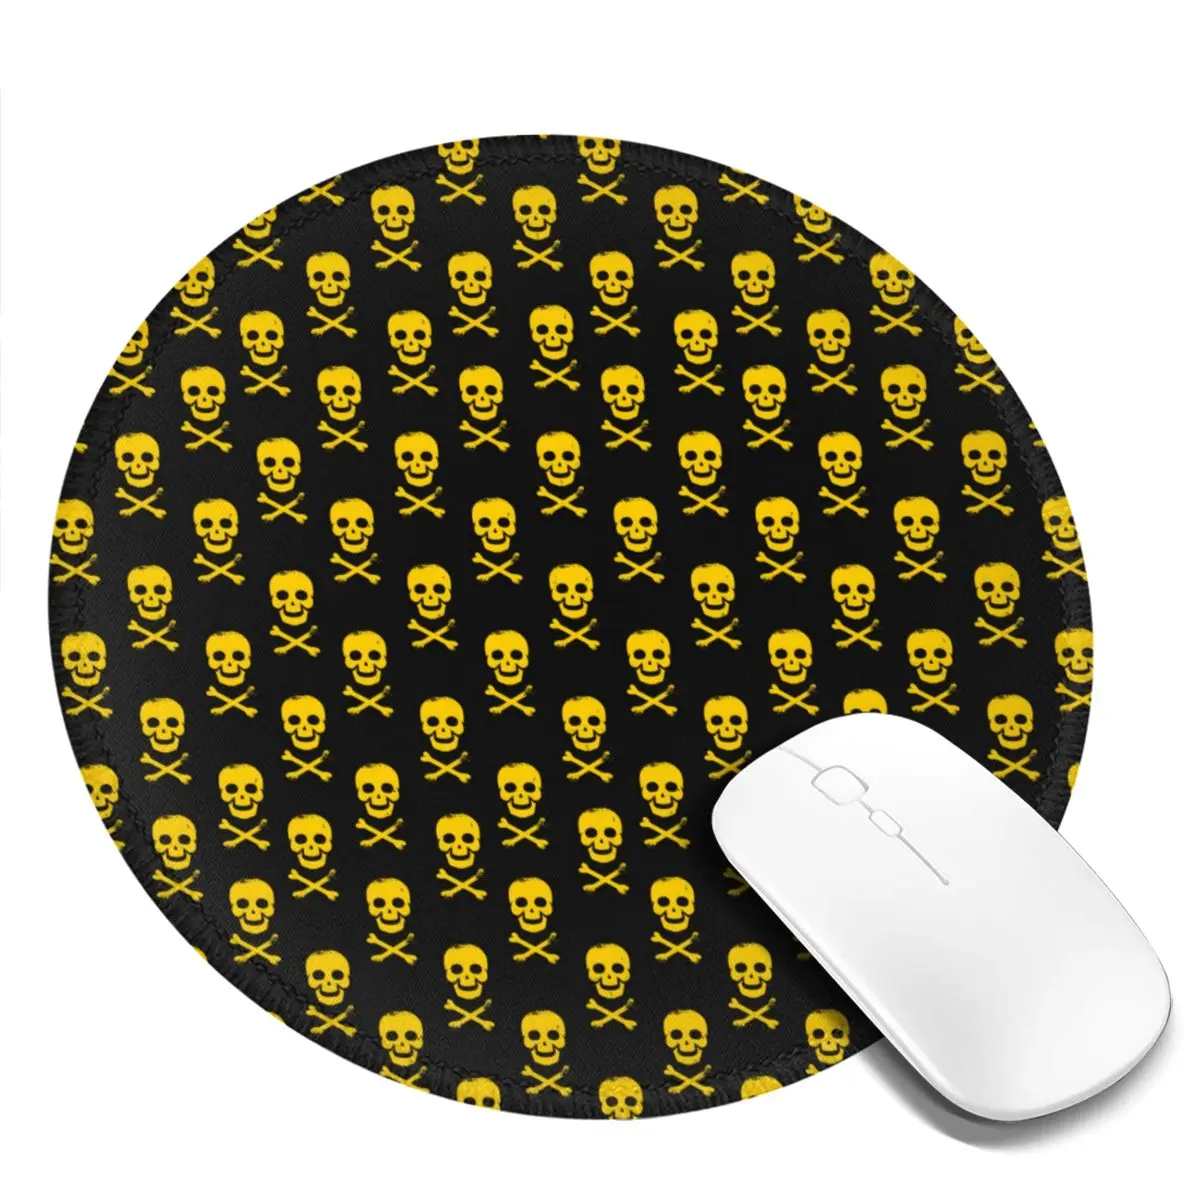 

Sugar Skull коврик для мыши с принтом желтые черепа резиновый Настольный коврик для мыши подлокотник Kawaii высокое качество фото коврик для мыши